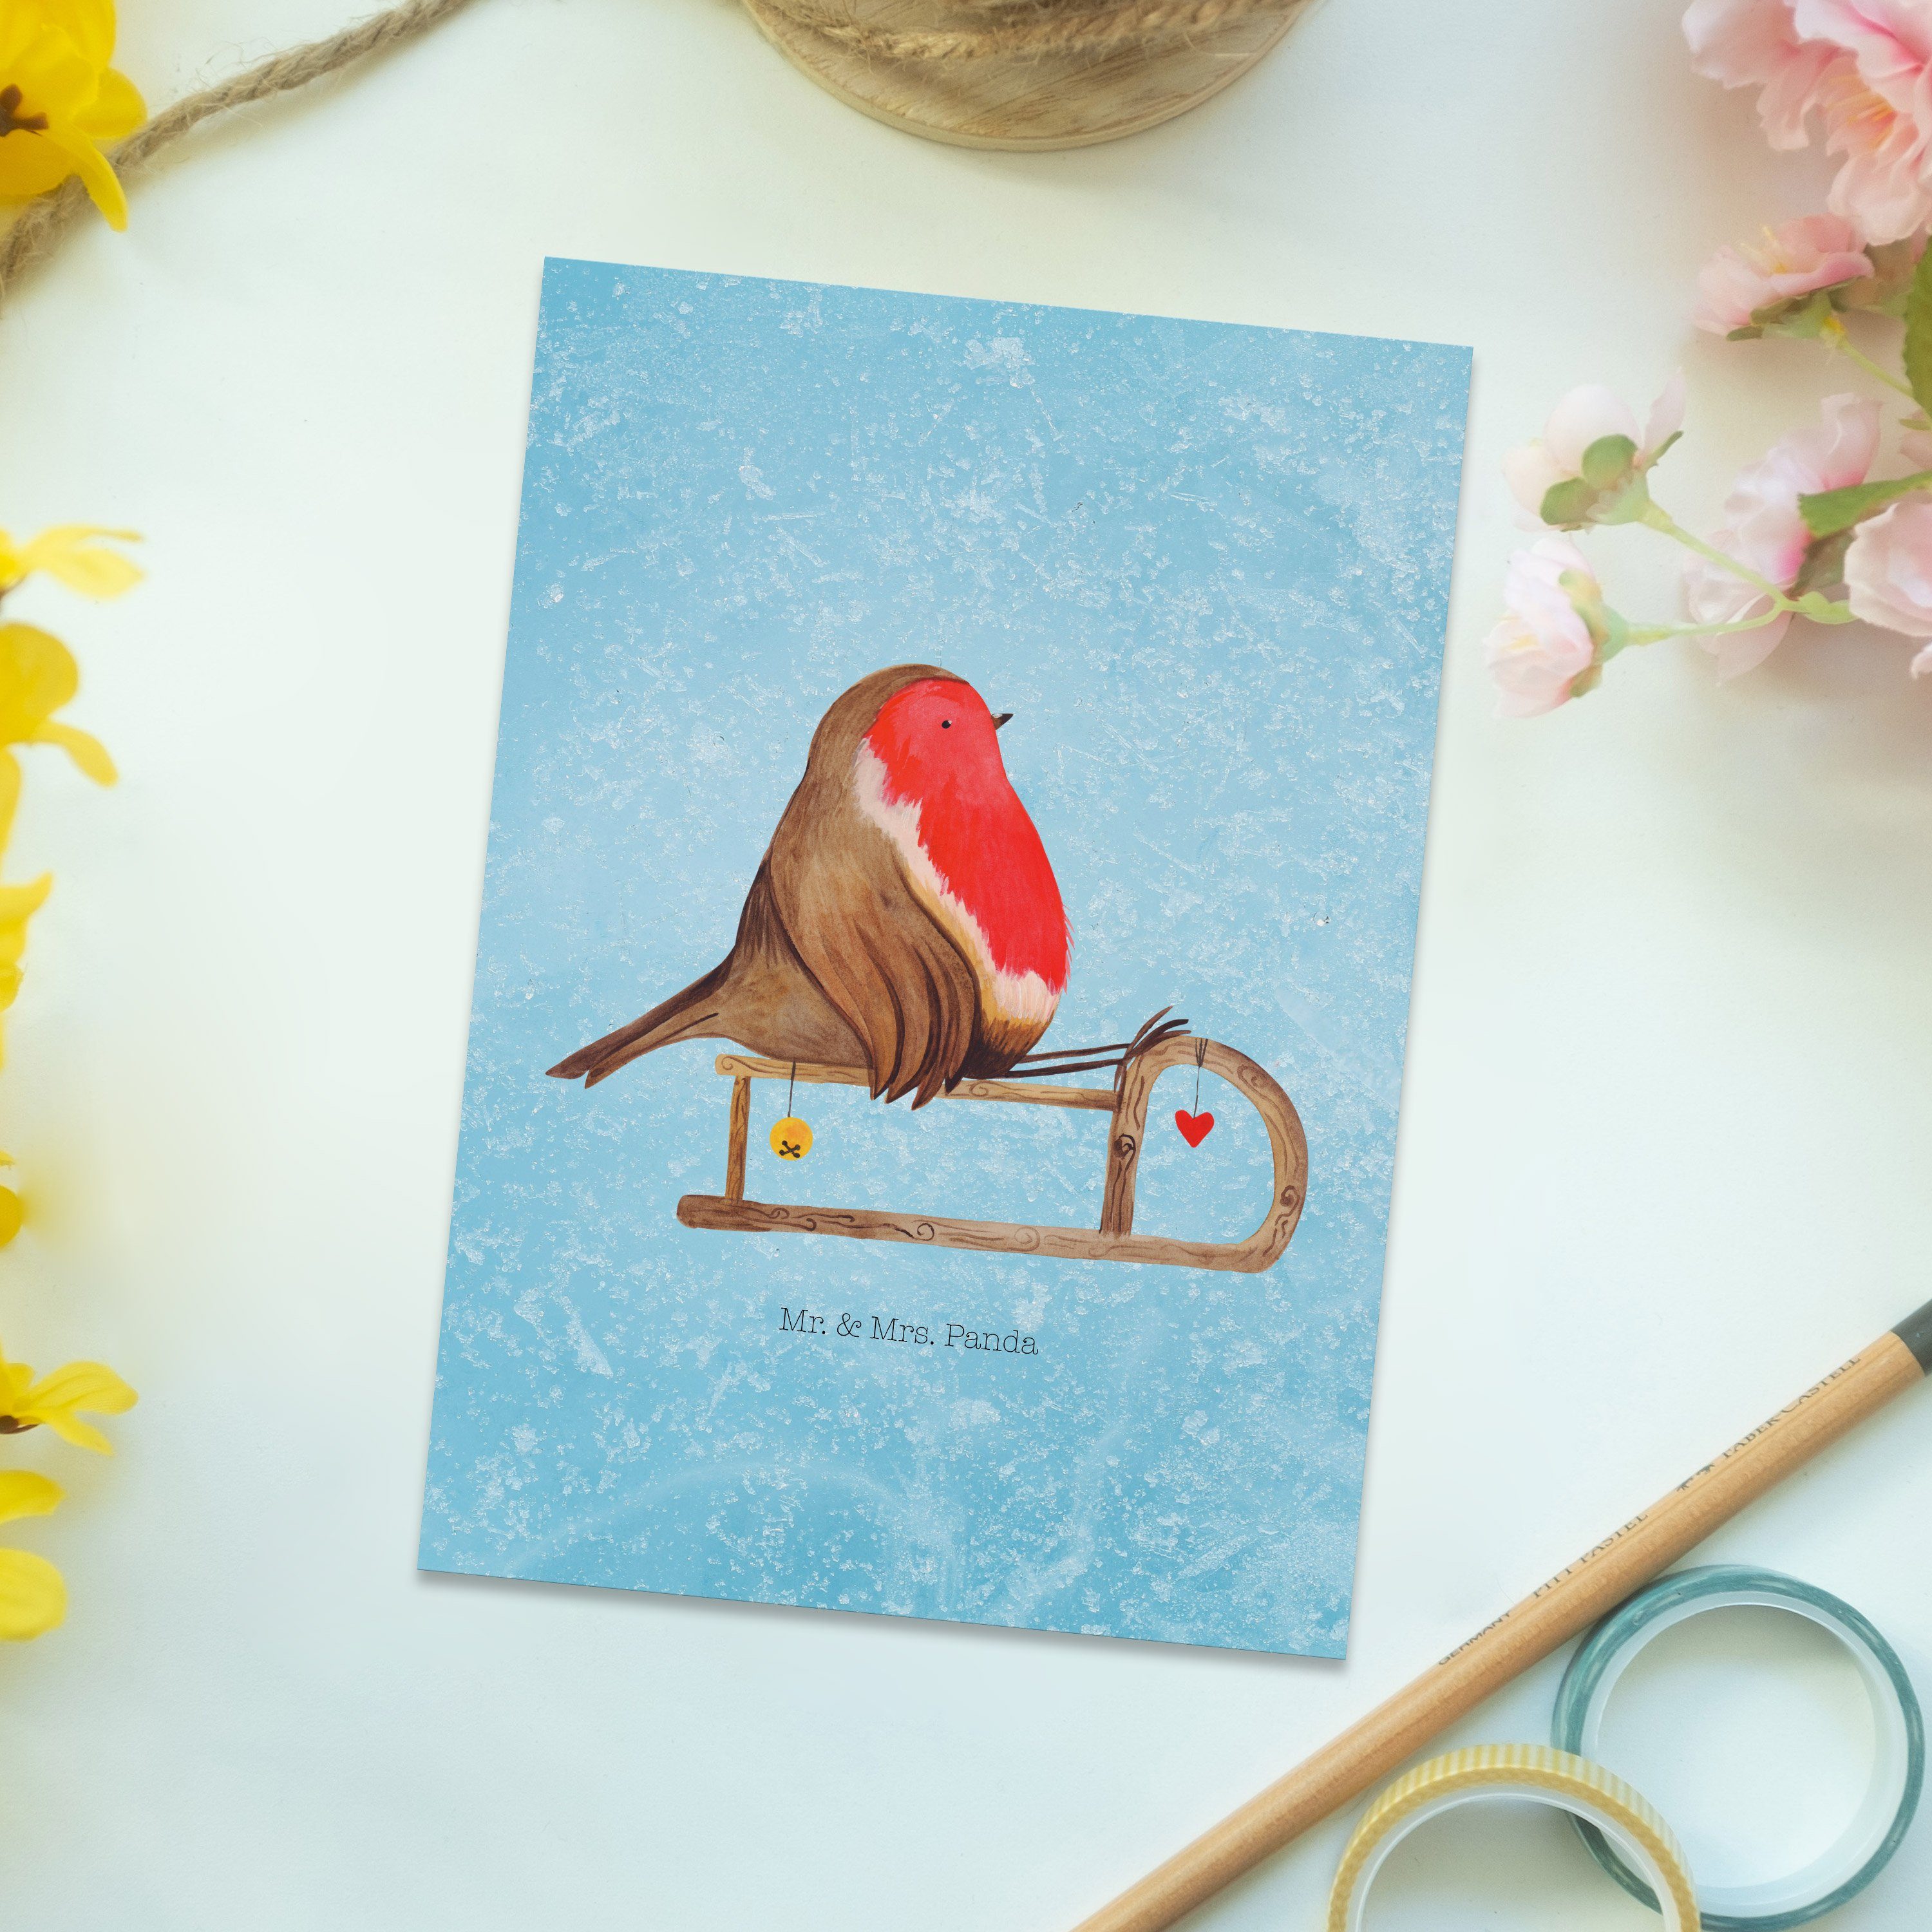 Mr. & Mrs. Panda Postkarte Eisblau Einladung, Geschenk, - Rotkehlchen - Schlitten Vogel Karte